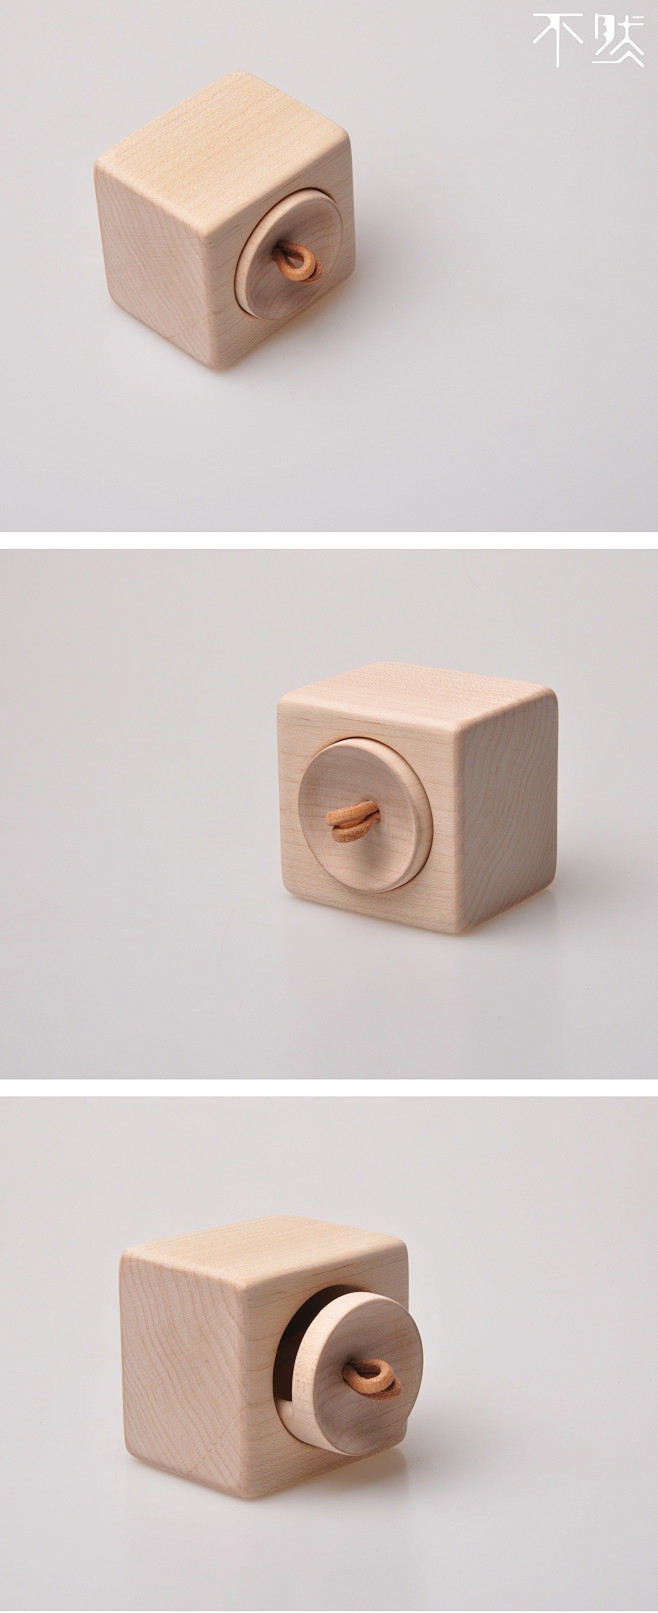 硬枫木首饰盒
记录我们每天制作的实木小物...